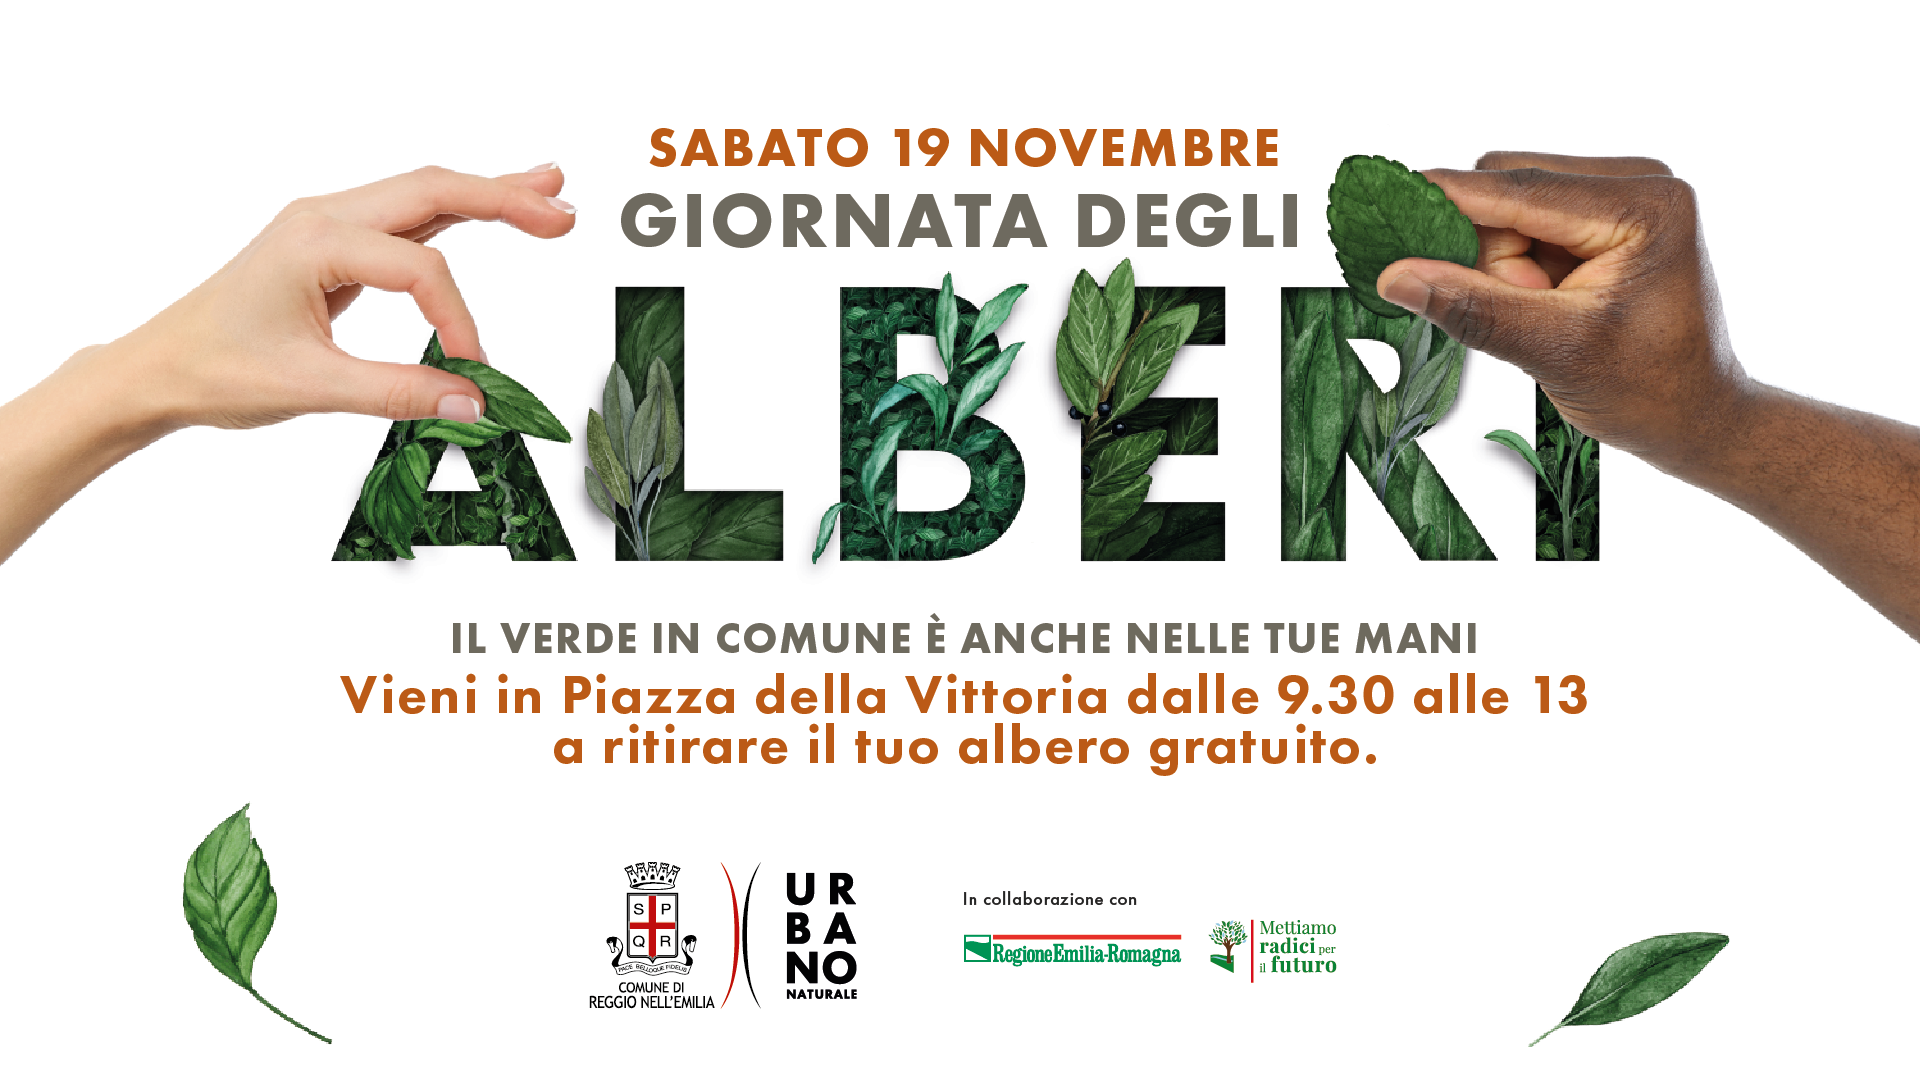 19 novembre - distribuzione gratuita di alberi in Piazza della Vittoria